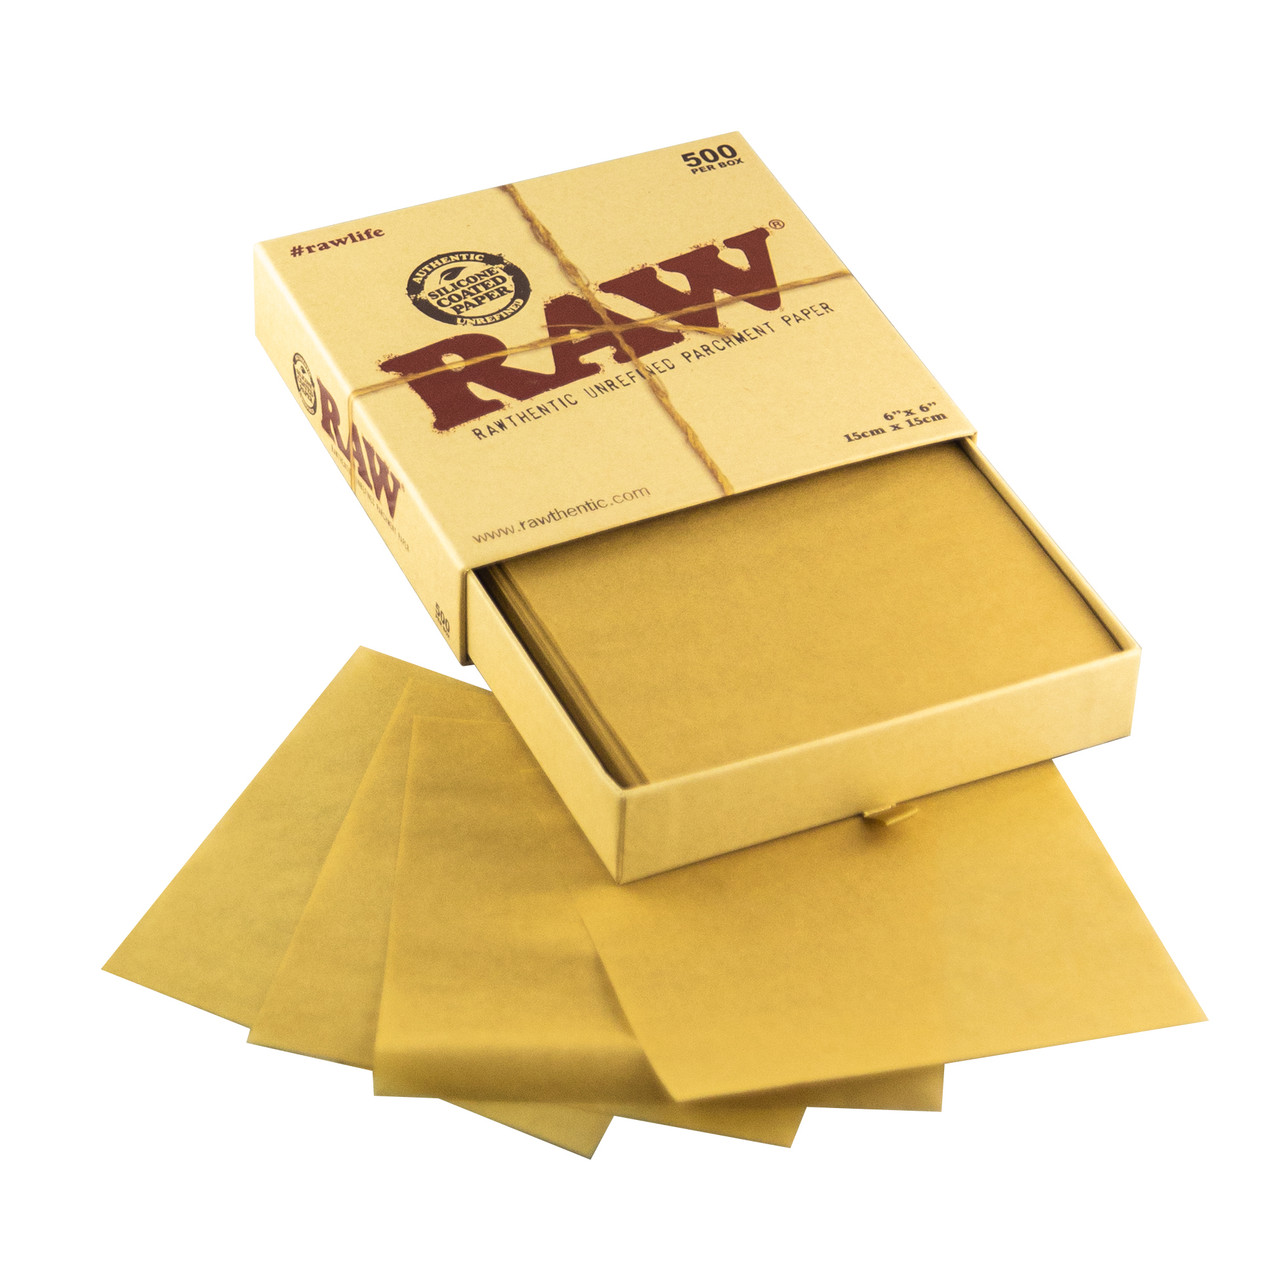 Raw Precut 6x6 500 Count Parchment Paper - Beamer Smoke